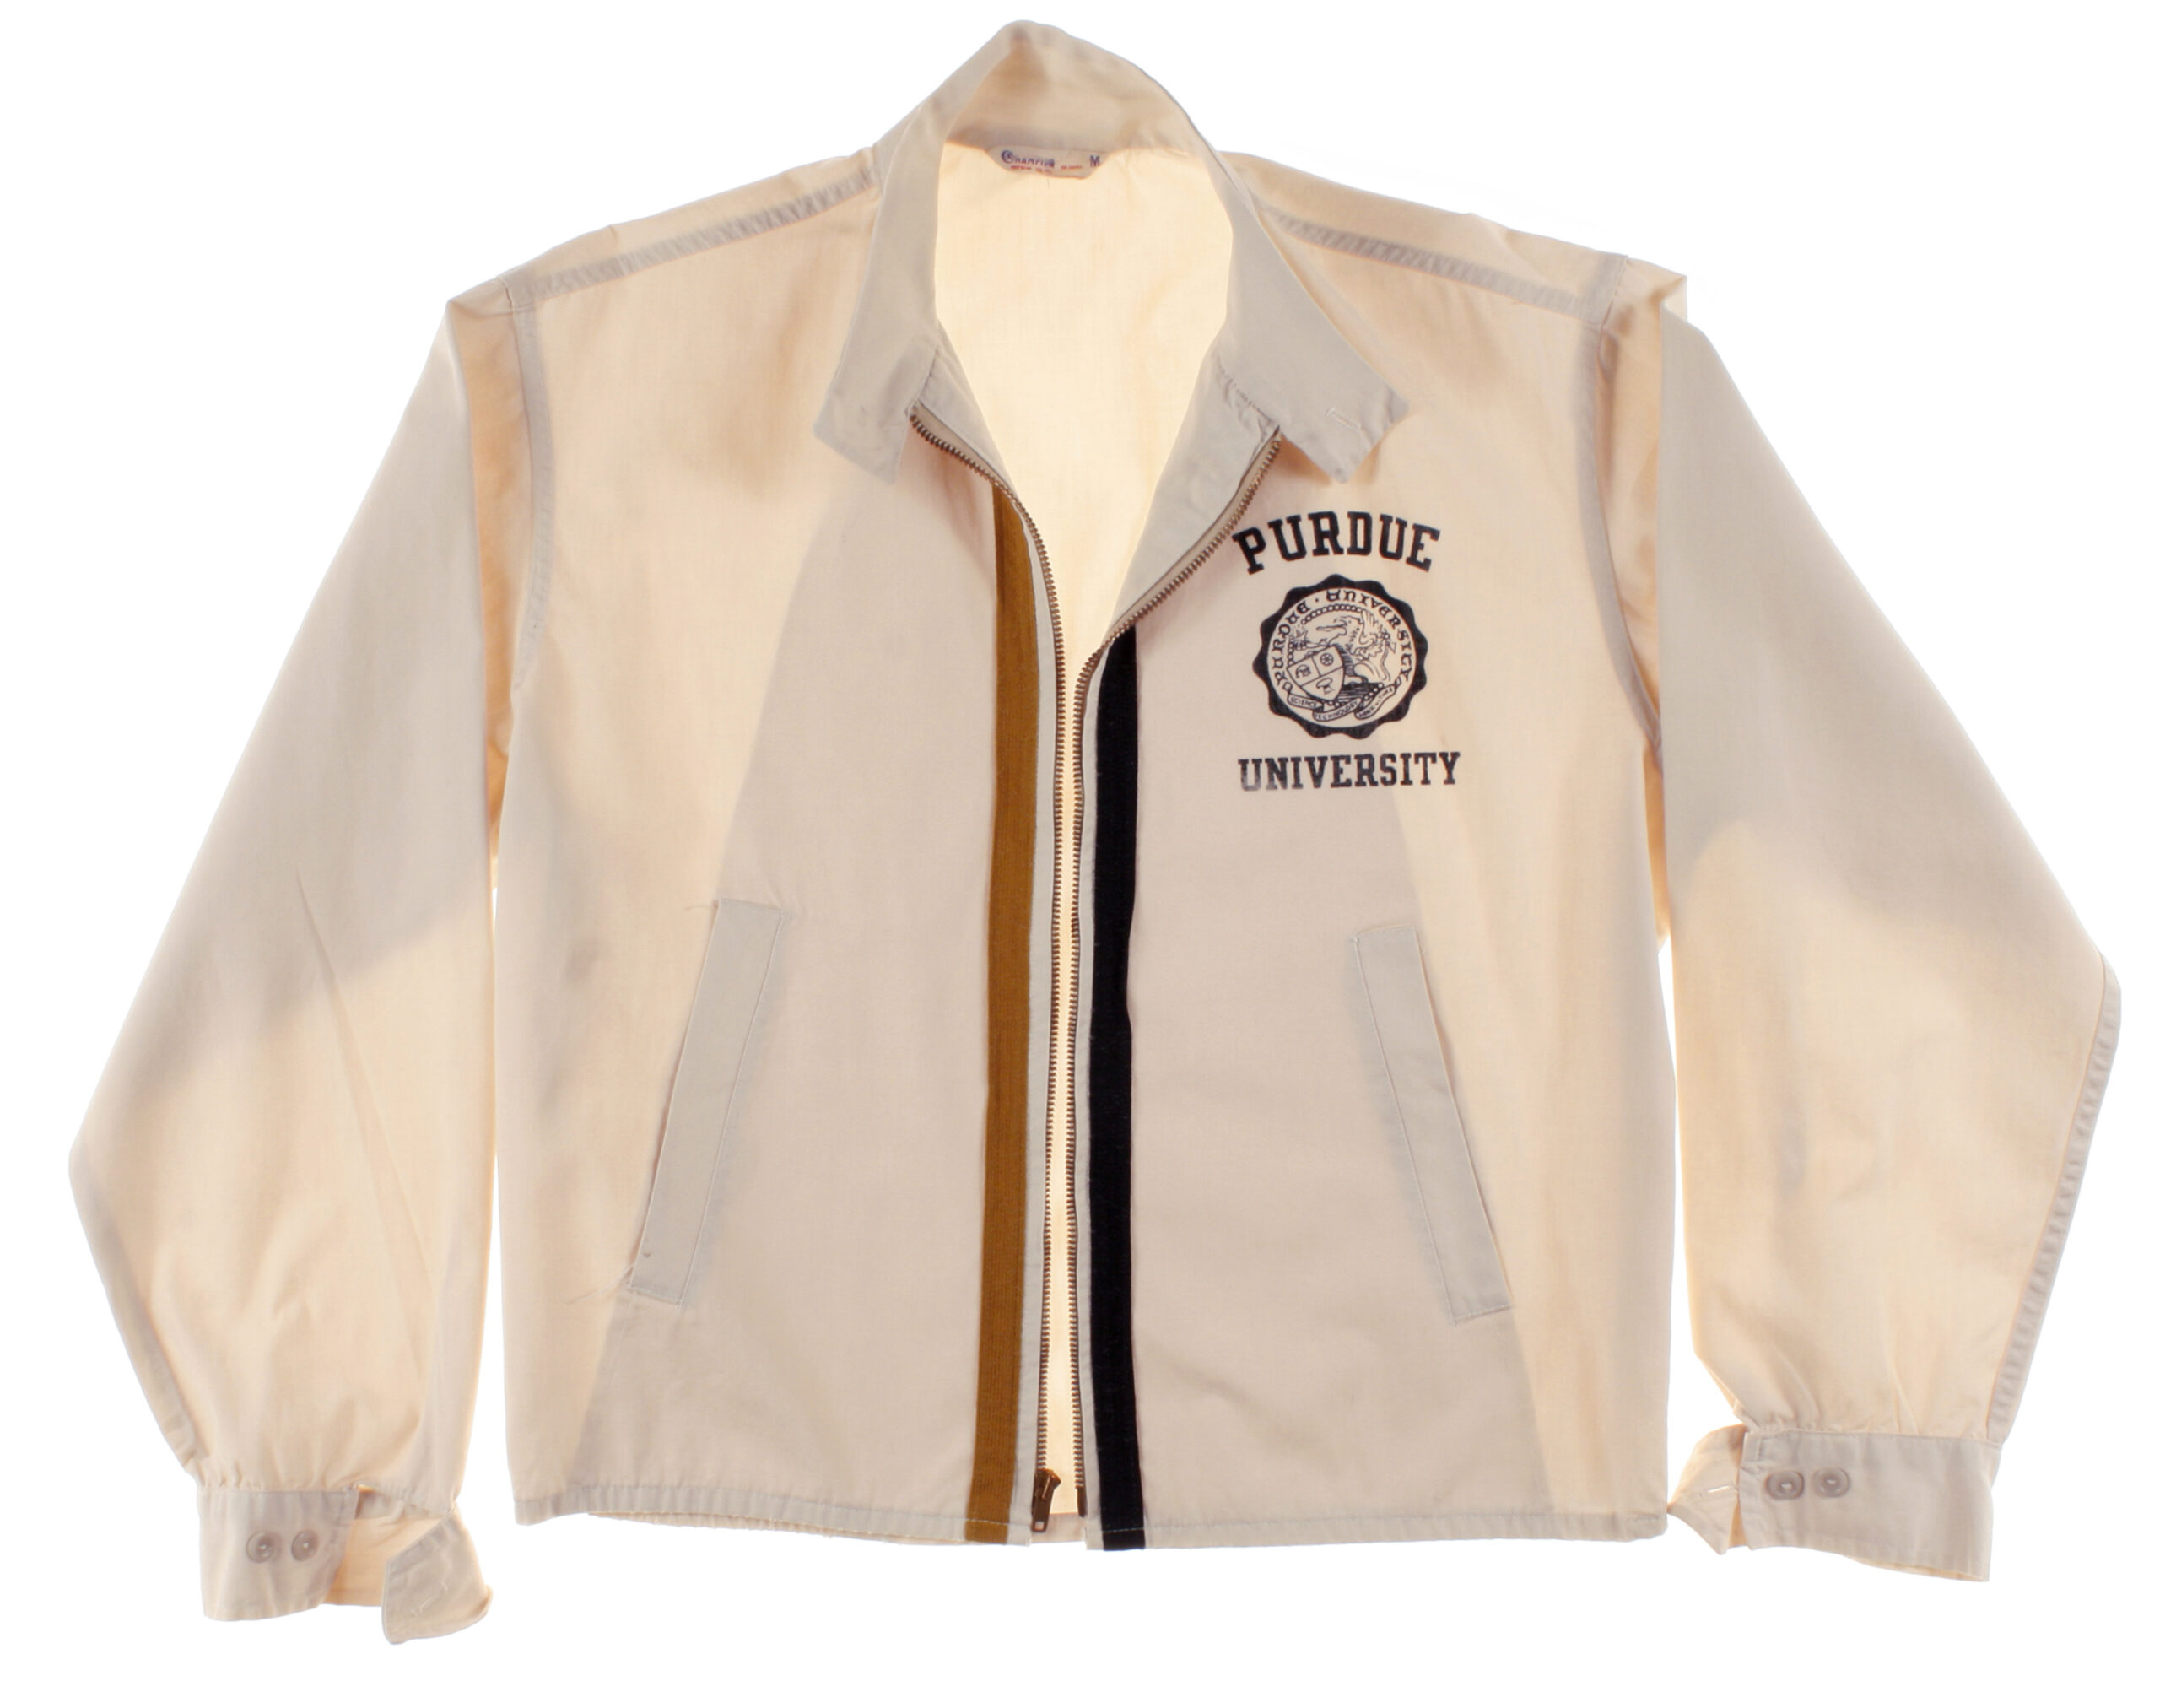 Univeristy jacket 50/60s